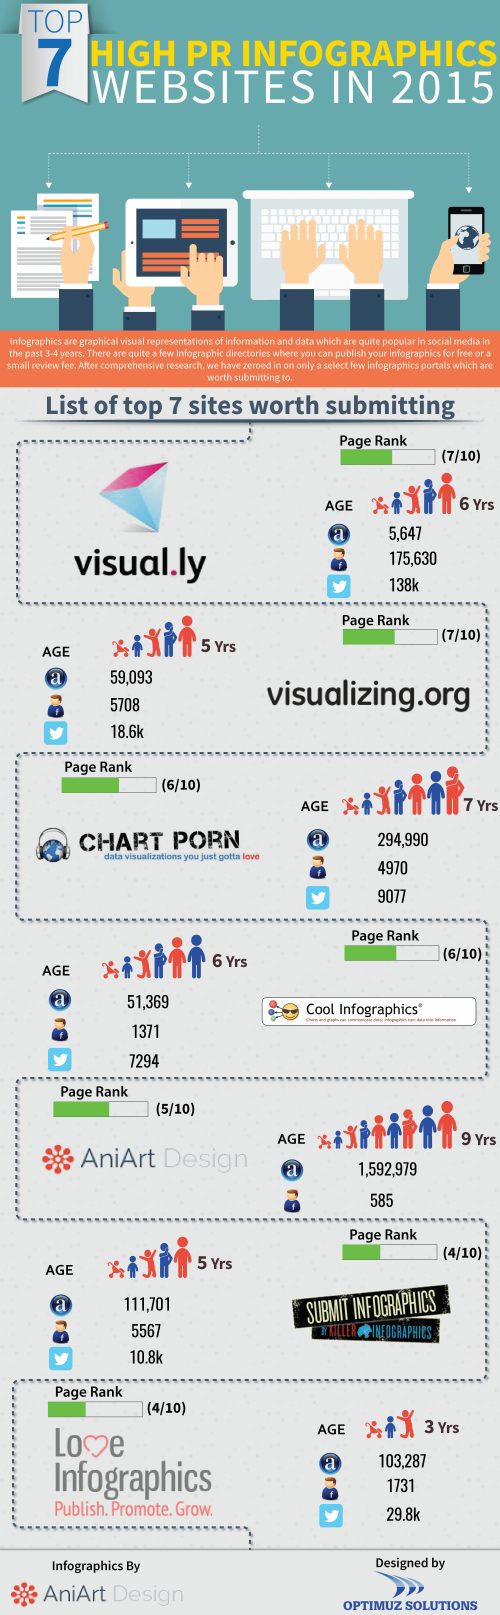 Top 7 Infographics websites in 2015'